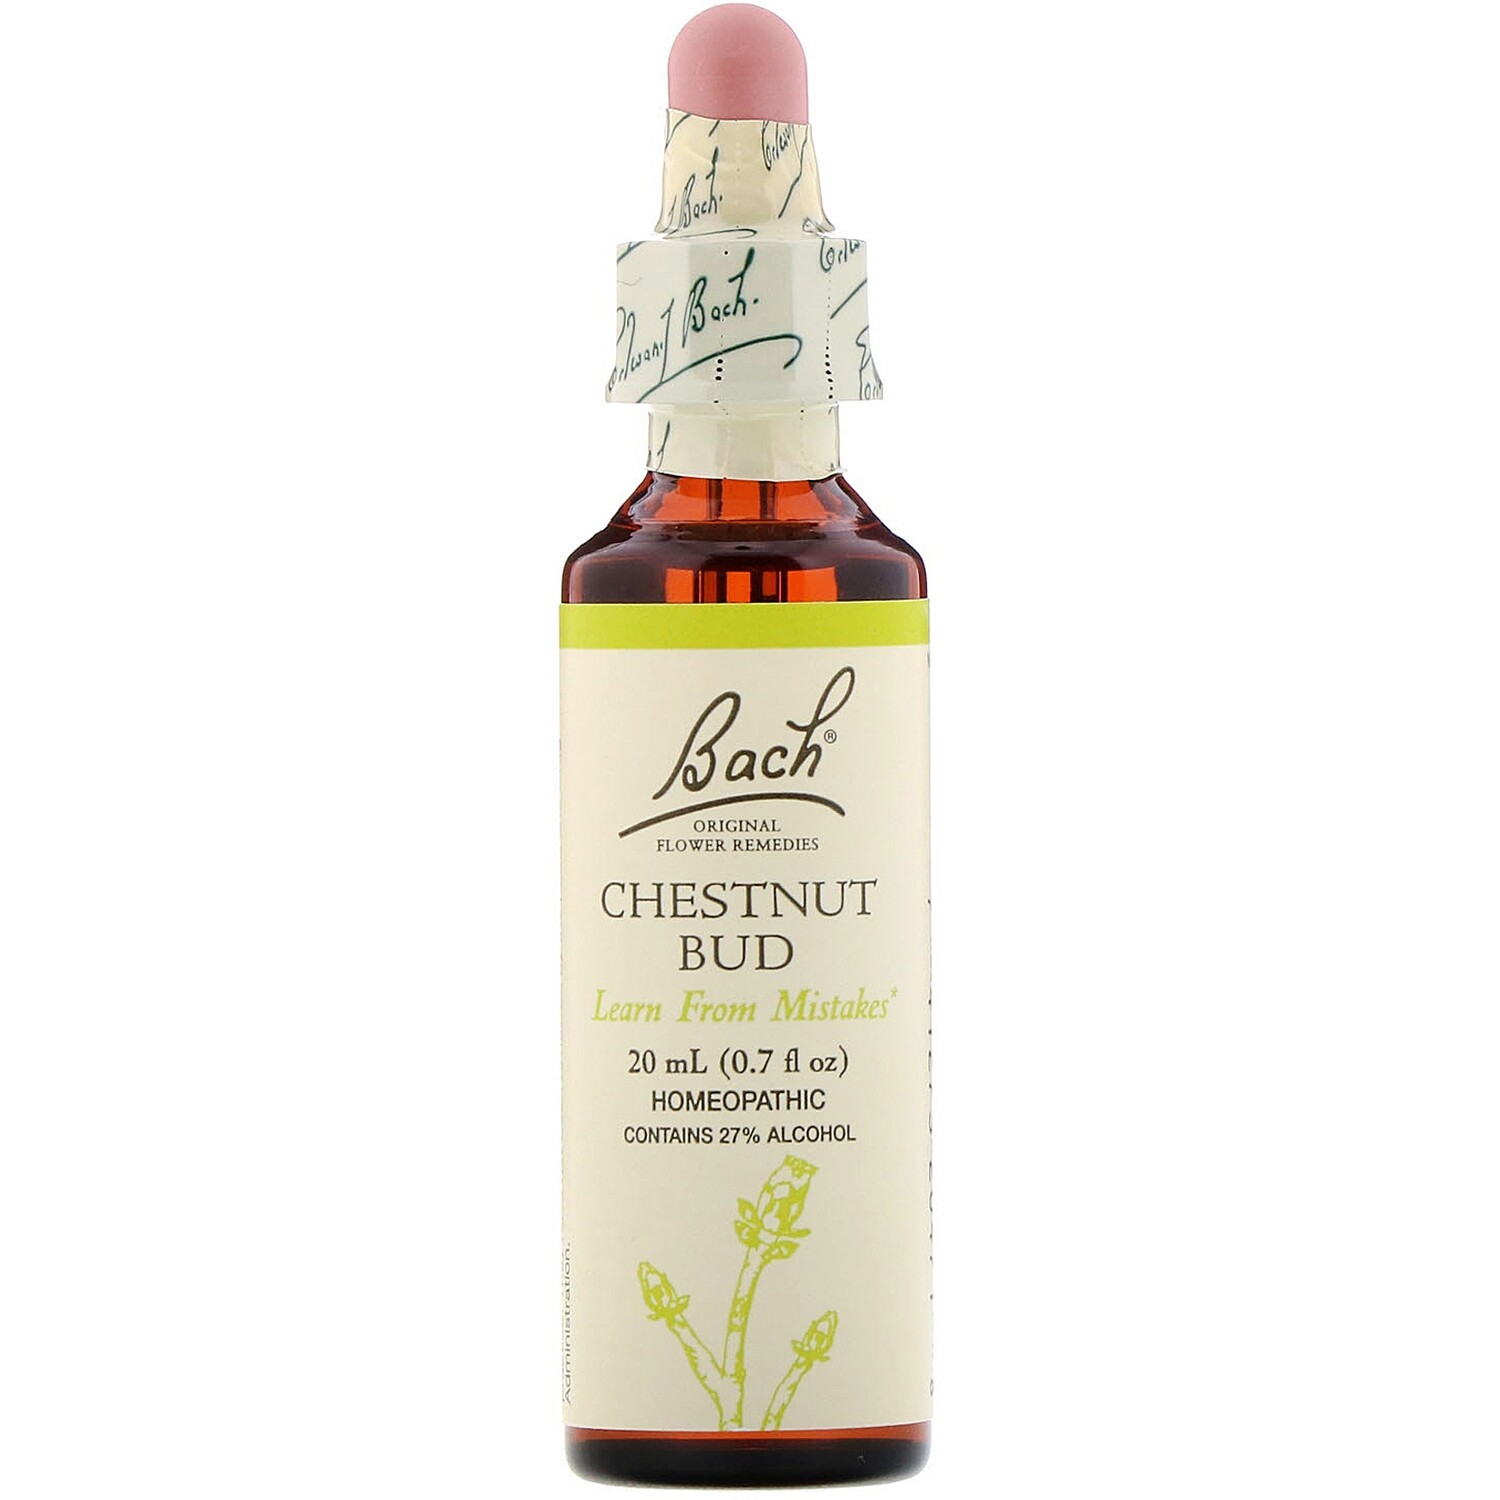 Chestnut Bud Bach Flower Remedy 20 ml